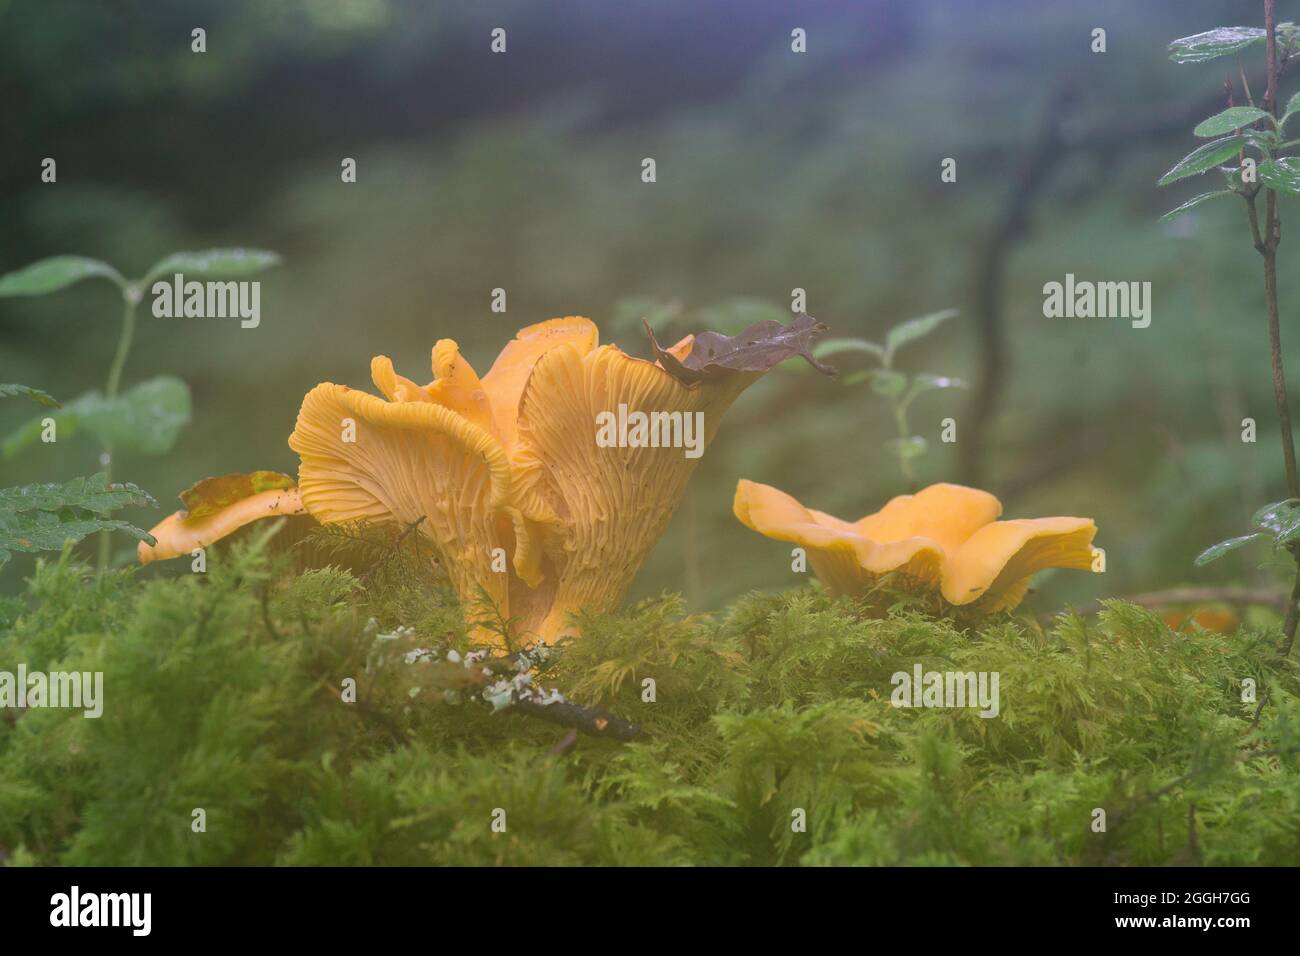 Les chanterelles sont considérées comme les champignons les plus nourrissant à trouver dans les bois anglais et sont assez abondantes dans certaines régions. Banque D'Images